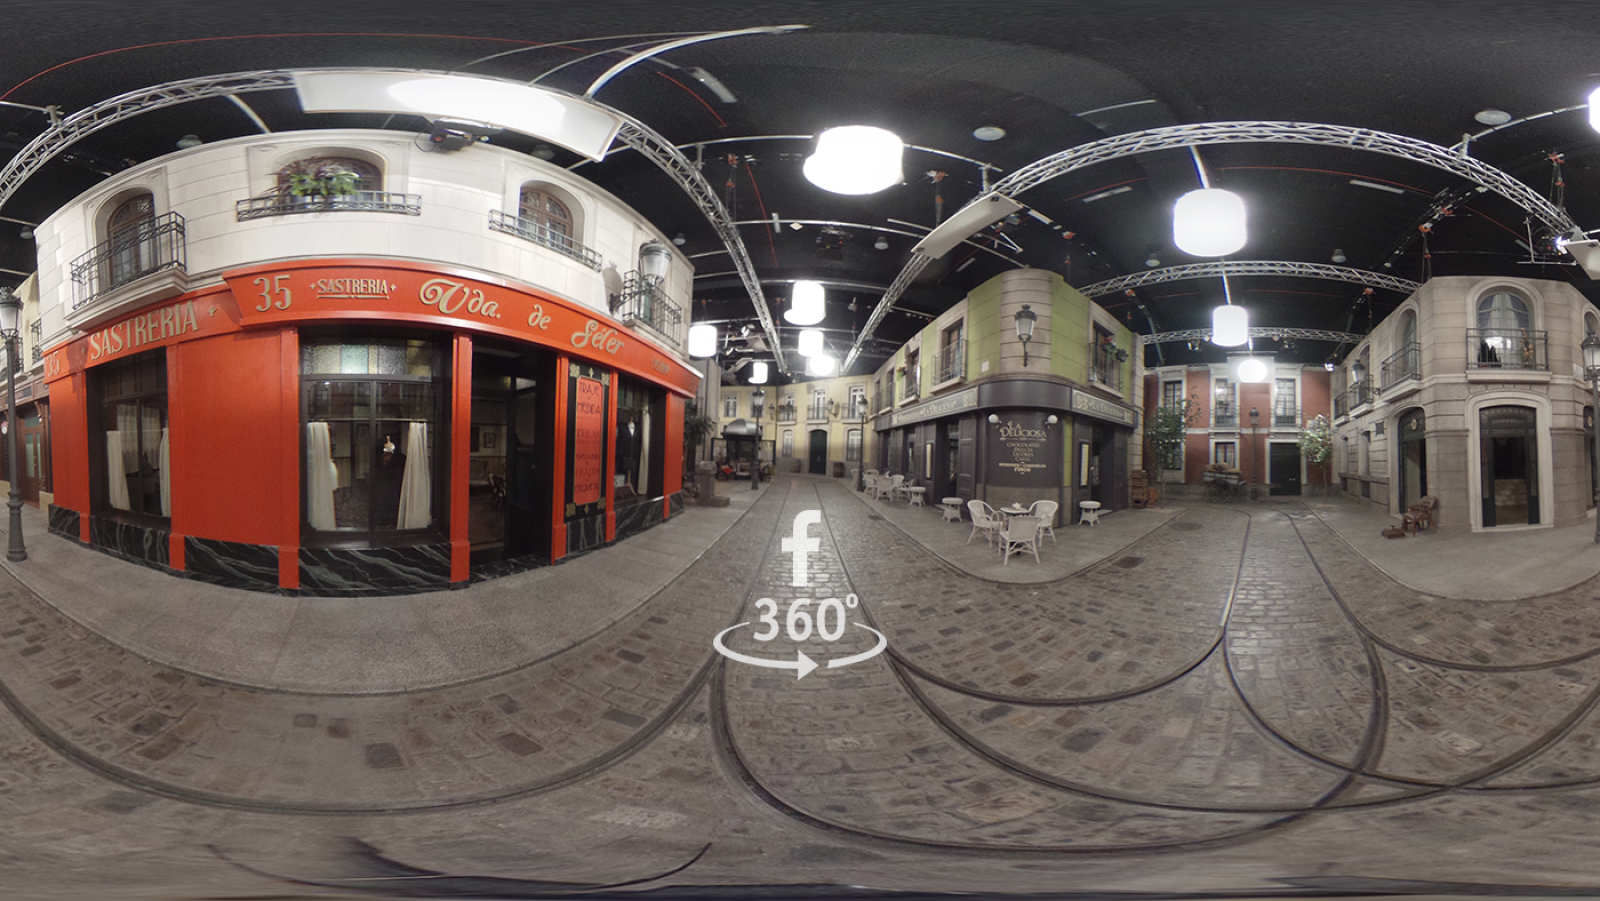 Descubre cómo es el decorado de la calle Acacias 38 con una visita virtual en 360º